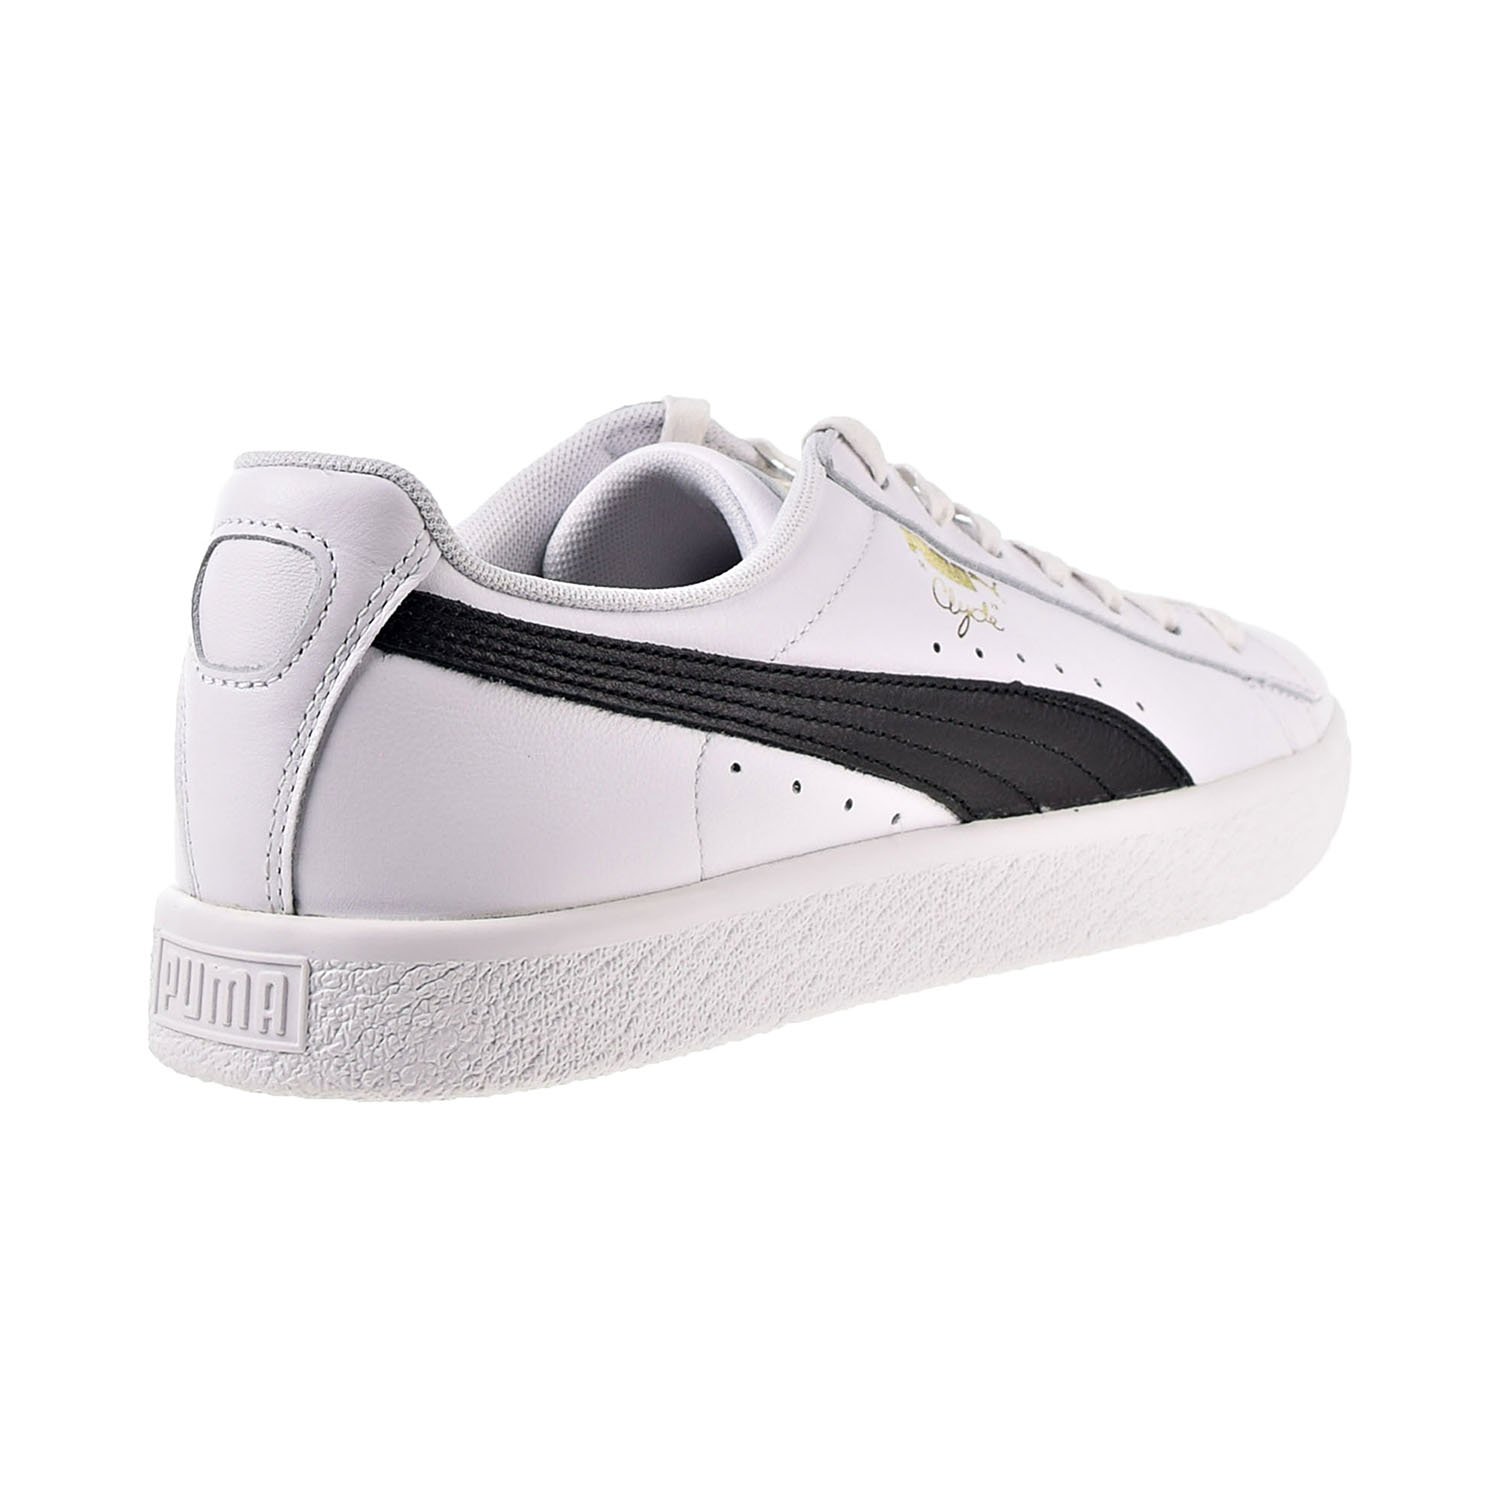 Puma Clyde Core Leather Foil Men's Shoes White-Black-Gold 364669-01 | eBay